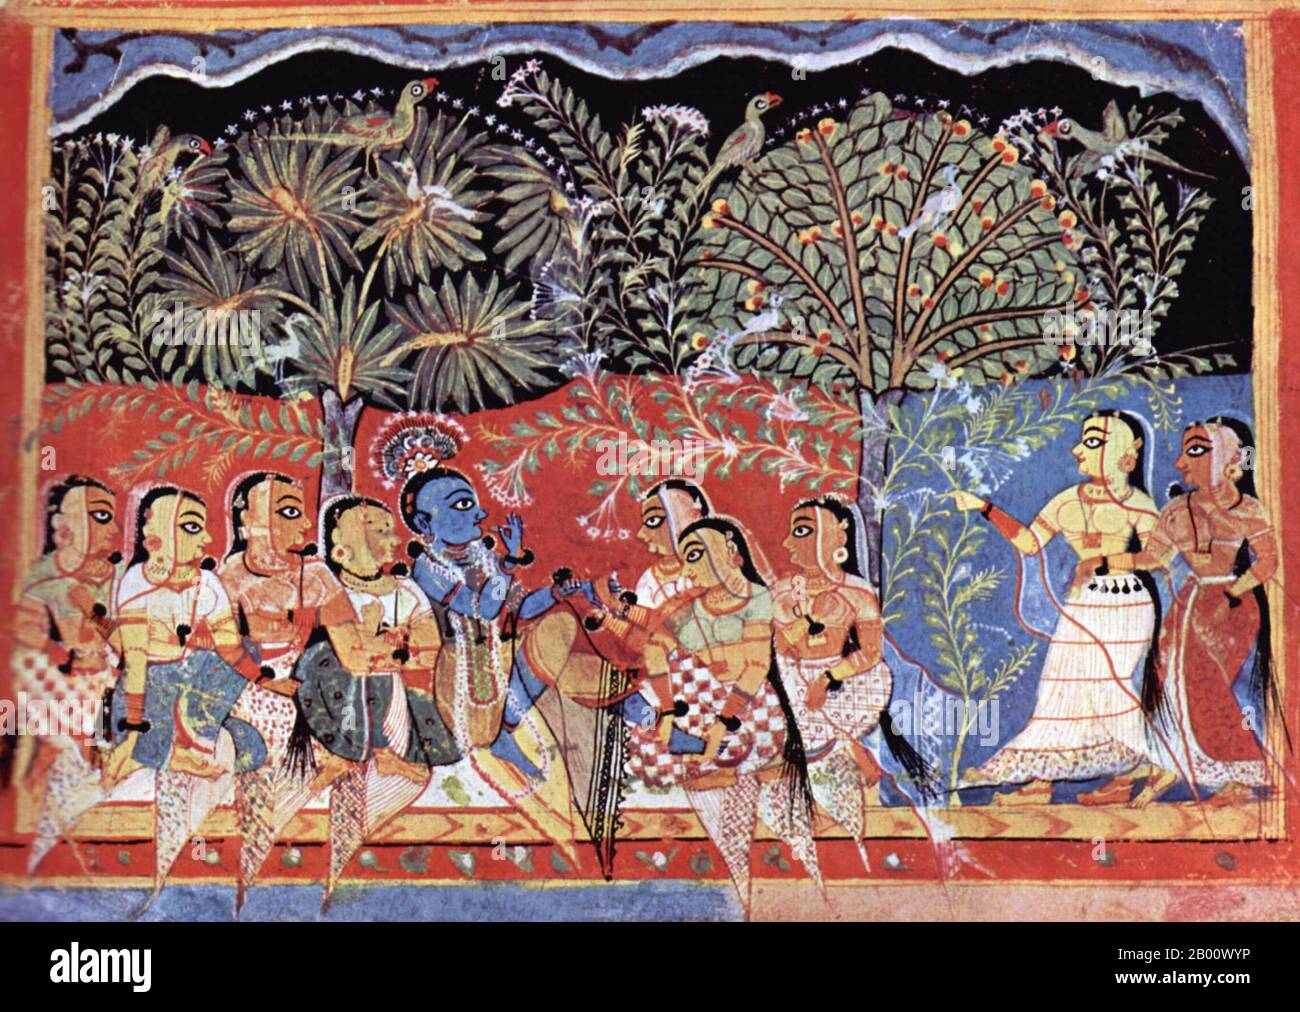 Le Gita Govinda est une œuvre composée du poète du XIIe siècle, Jayadeva, né à Kenduli Sasan près de Puri à Orissa. Il décrit la relation entre Krishna et les gopis (éleveurs de vaches femelles) de Vrindavana, et en particulier un gopi nommé Radha. Ce travail a été d'une grande importance dans le développement des traditions bhakti de l'hindouisme. Le Gita Govinda est organisé en douze chapitres. Chaque chapitre est subdivisé en vingt-quatre divisions appelées Prabandhas. Les prabanhas contiennent des couplets regroupés en eights, appelés Ashtapadis. Le texte élabore également les huit moo Banque D'Images